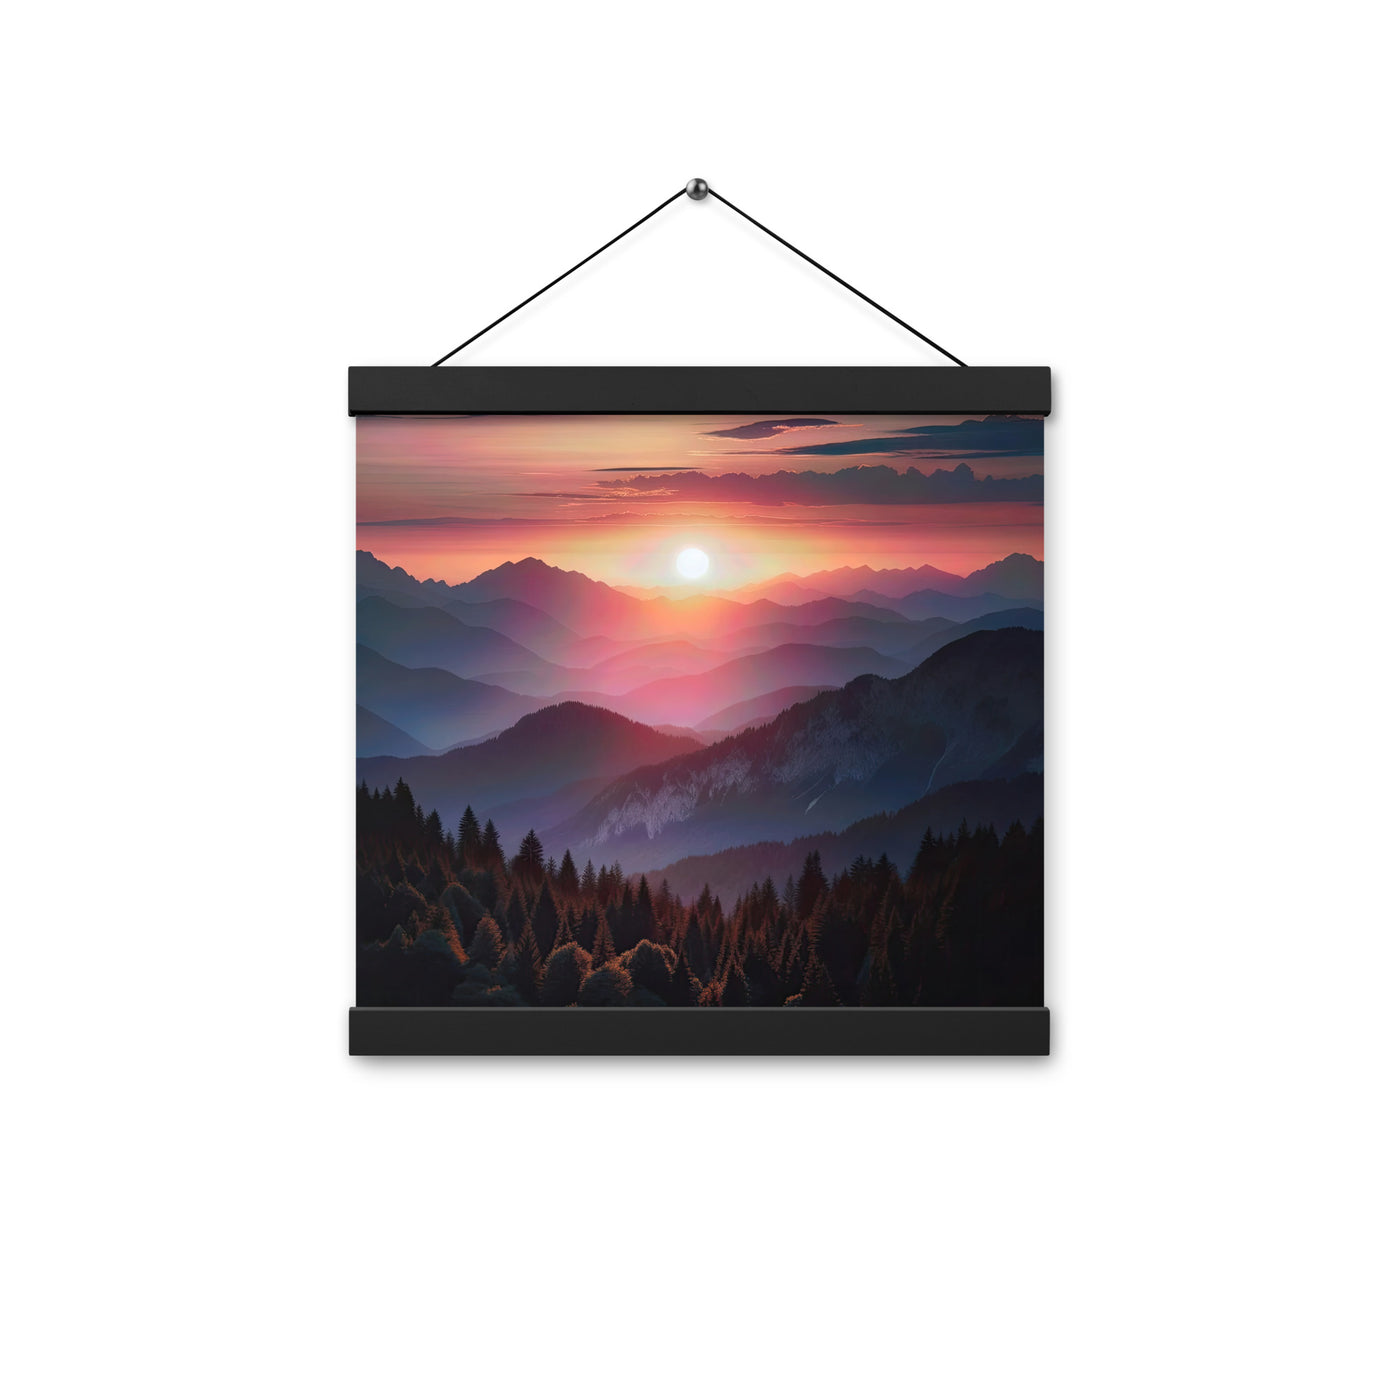 Foto der Alpenwildnis beim Sonnenuntergang, Himmel in warmen Orange-Tönen - Premium Poster mit Aufhängung berge xxx yyy zzz 30.5 x 30.5 cm